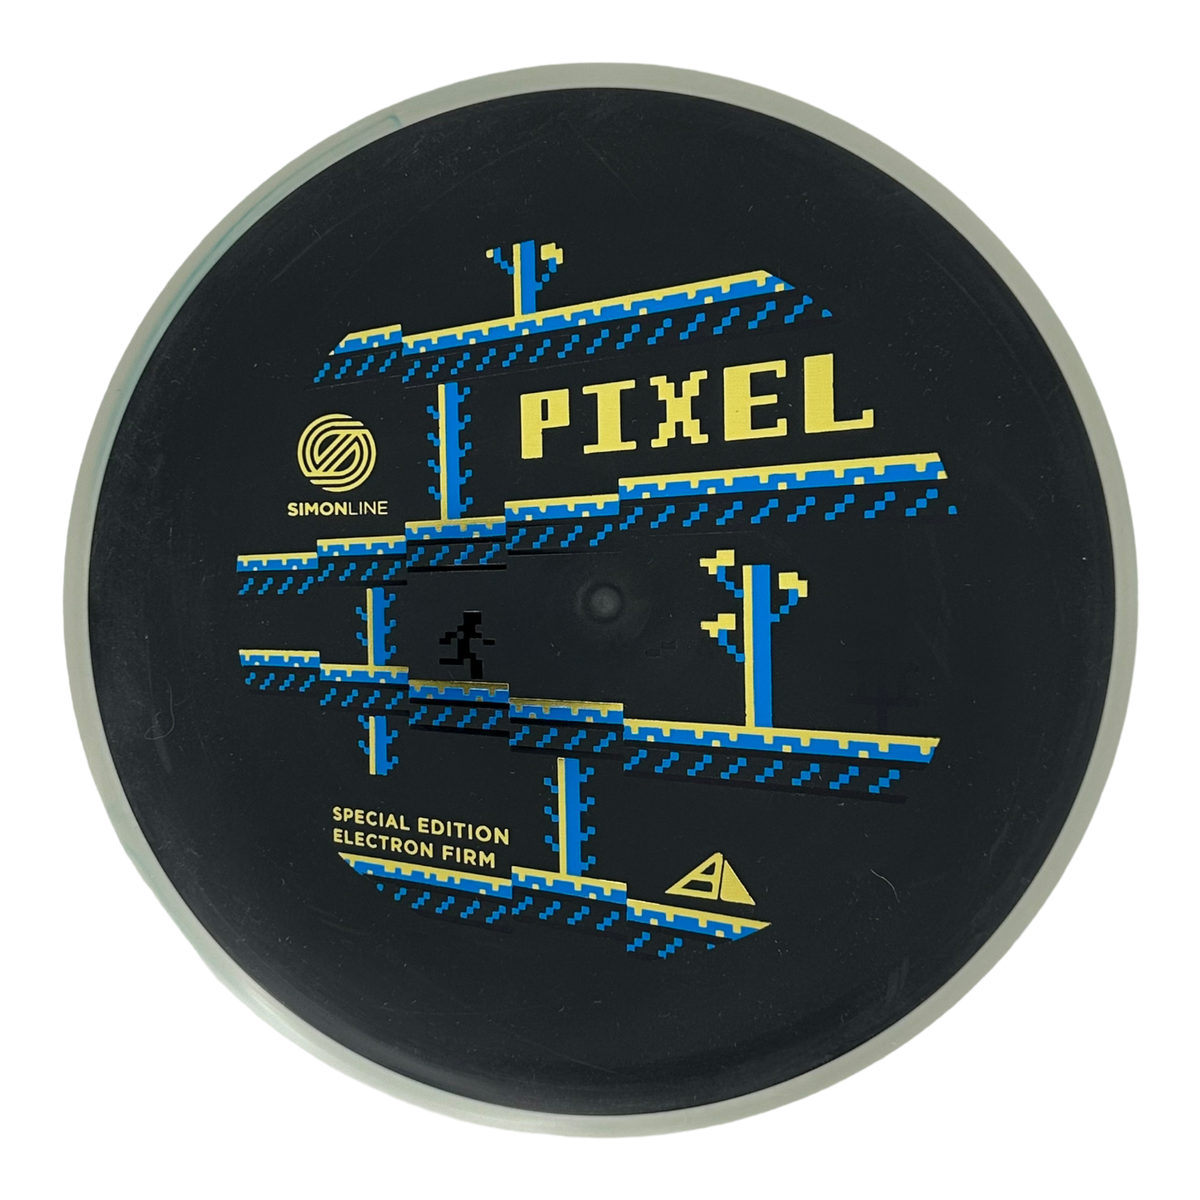 Axiom Simon Lizotte Simon Line Electron (Firm) Pixel - Special Edition